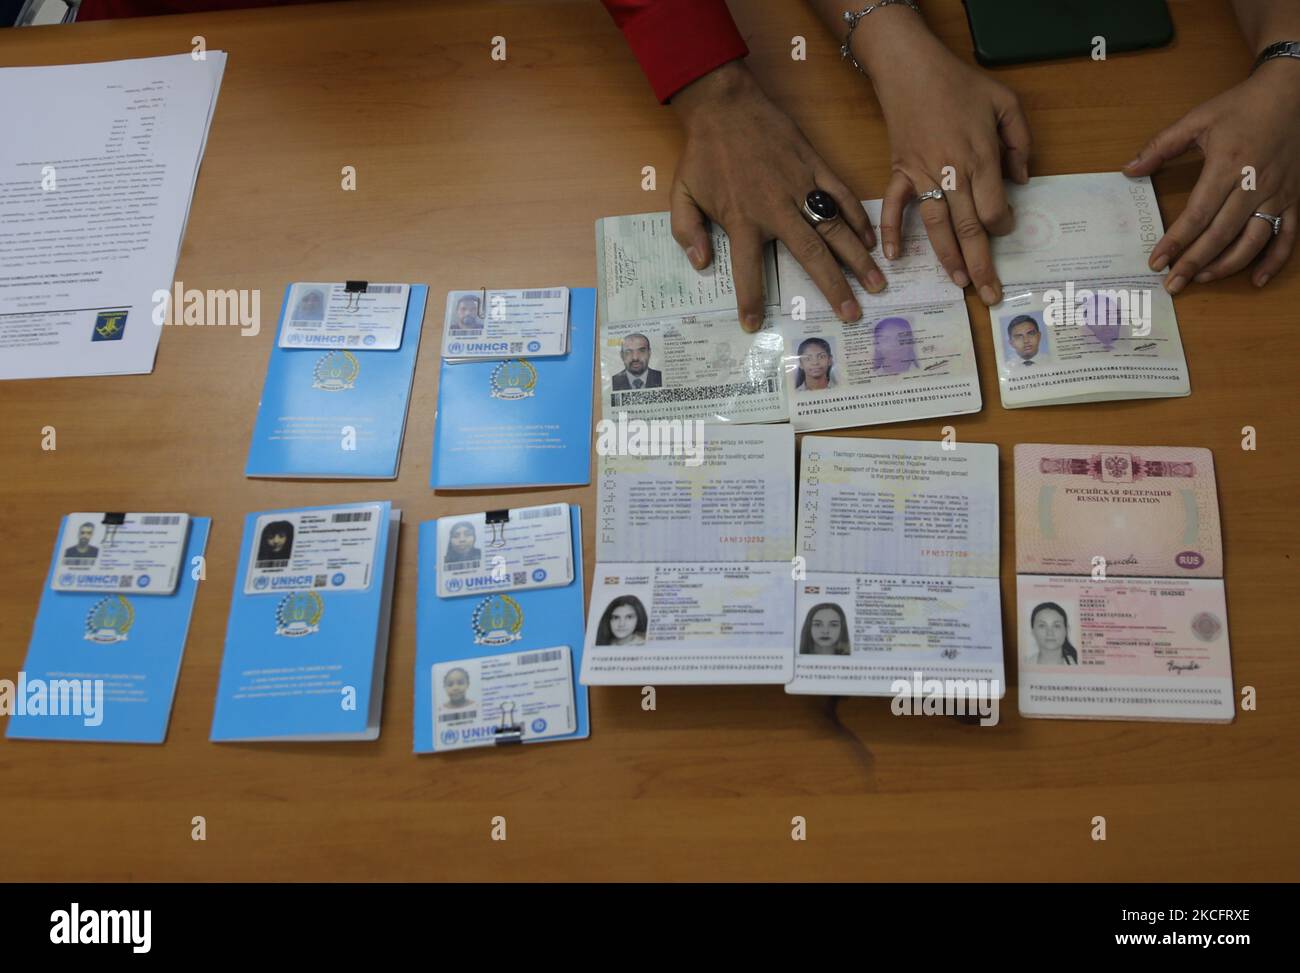 Les agents d'immigration recueillent des données sur les résidents des pays étrangers après avoir mené une opération conjointe à l'appartement de la ville de Basura, Jakarta, on, 6 juin 2021. D'après les résultats de l'opération, six ressortissants étrangers d'Ukraine, de Russie, du Yémen, de Sri Lanka, ont été trouvés violer les règles en dépassant le permis de séjour en Indonésie par vérifier l'identité de passeport des ressortissants étrangers et aller à l'appartement de chambre. (Photo de Dasril Roszandi/NurPhoto) Banque D'Images